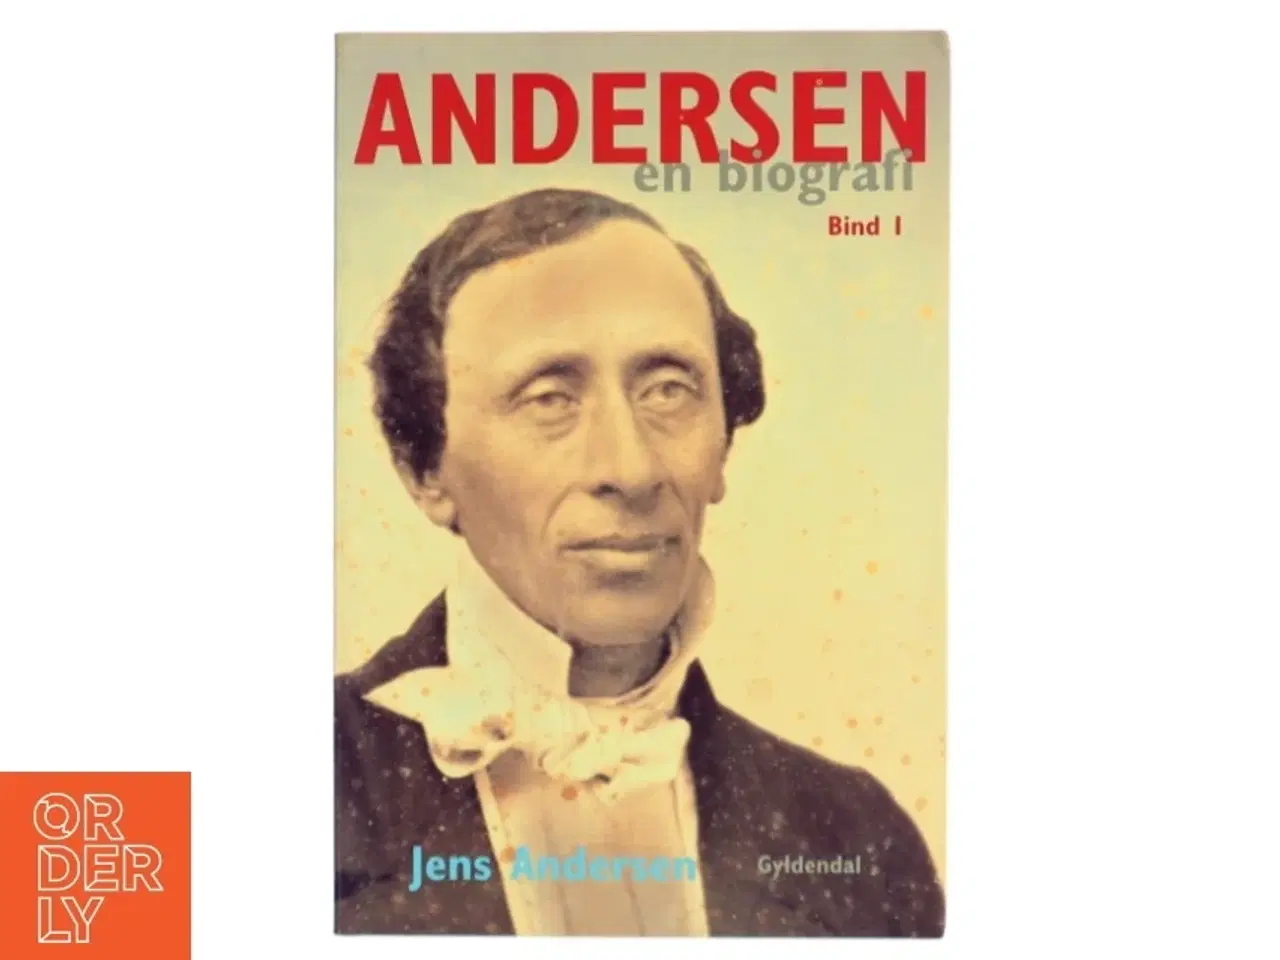 Billede 1 - Andersen : en biografi. Bind 2 af Jens Andersen (f. 1955) (Bog)